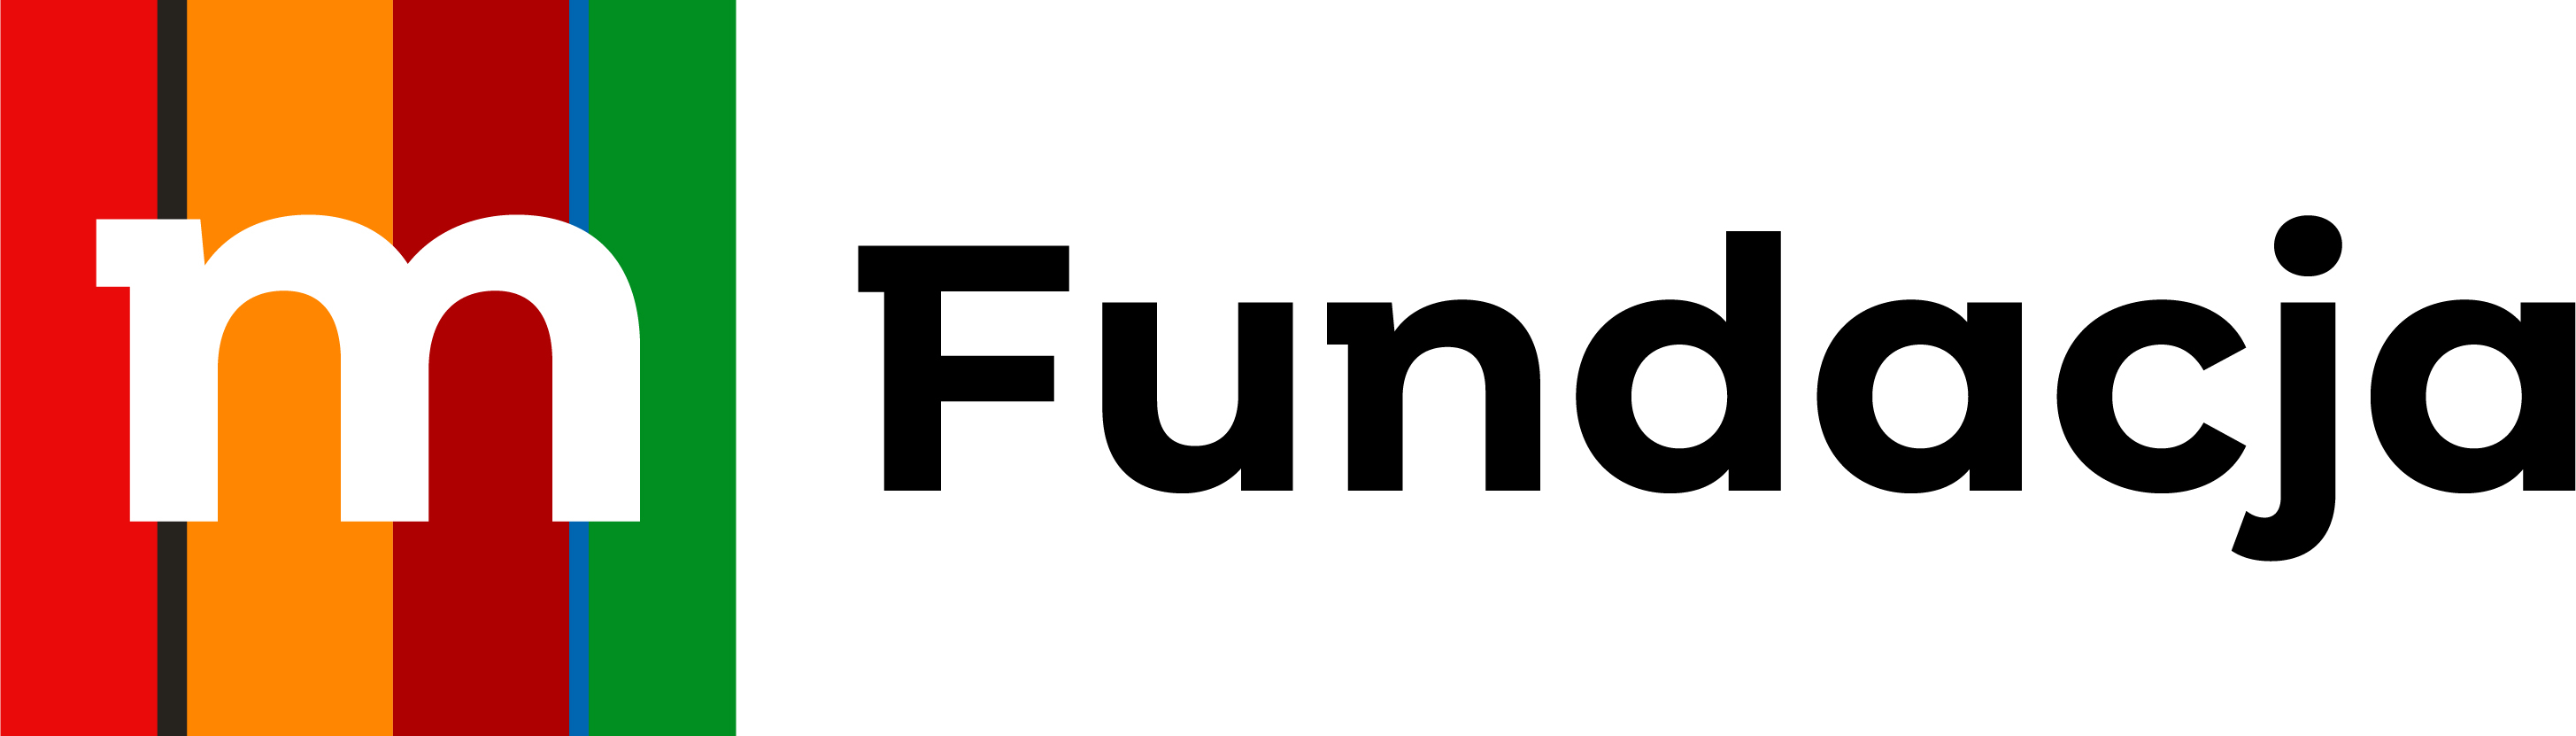 Logo mFundacji